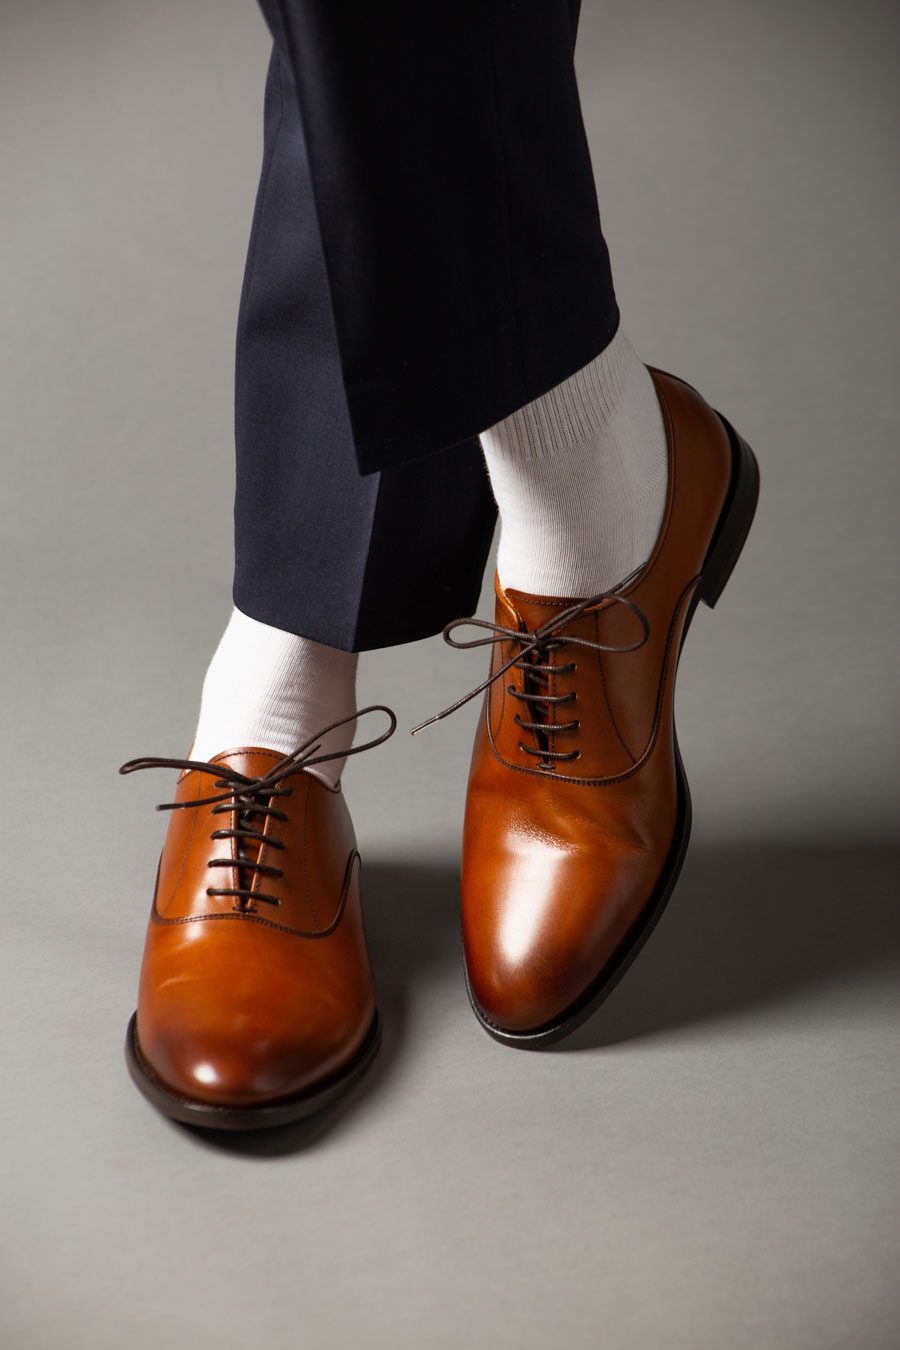 Gentleman Store - 7 sfaturi cum să combinați pantalonii, șosetele și  pantofii